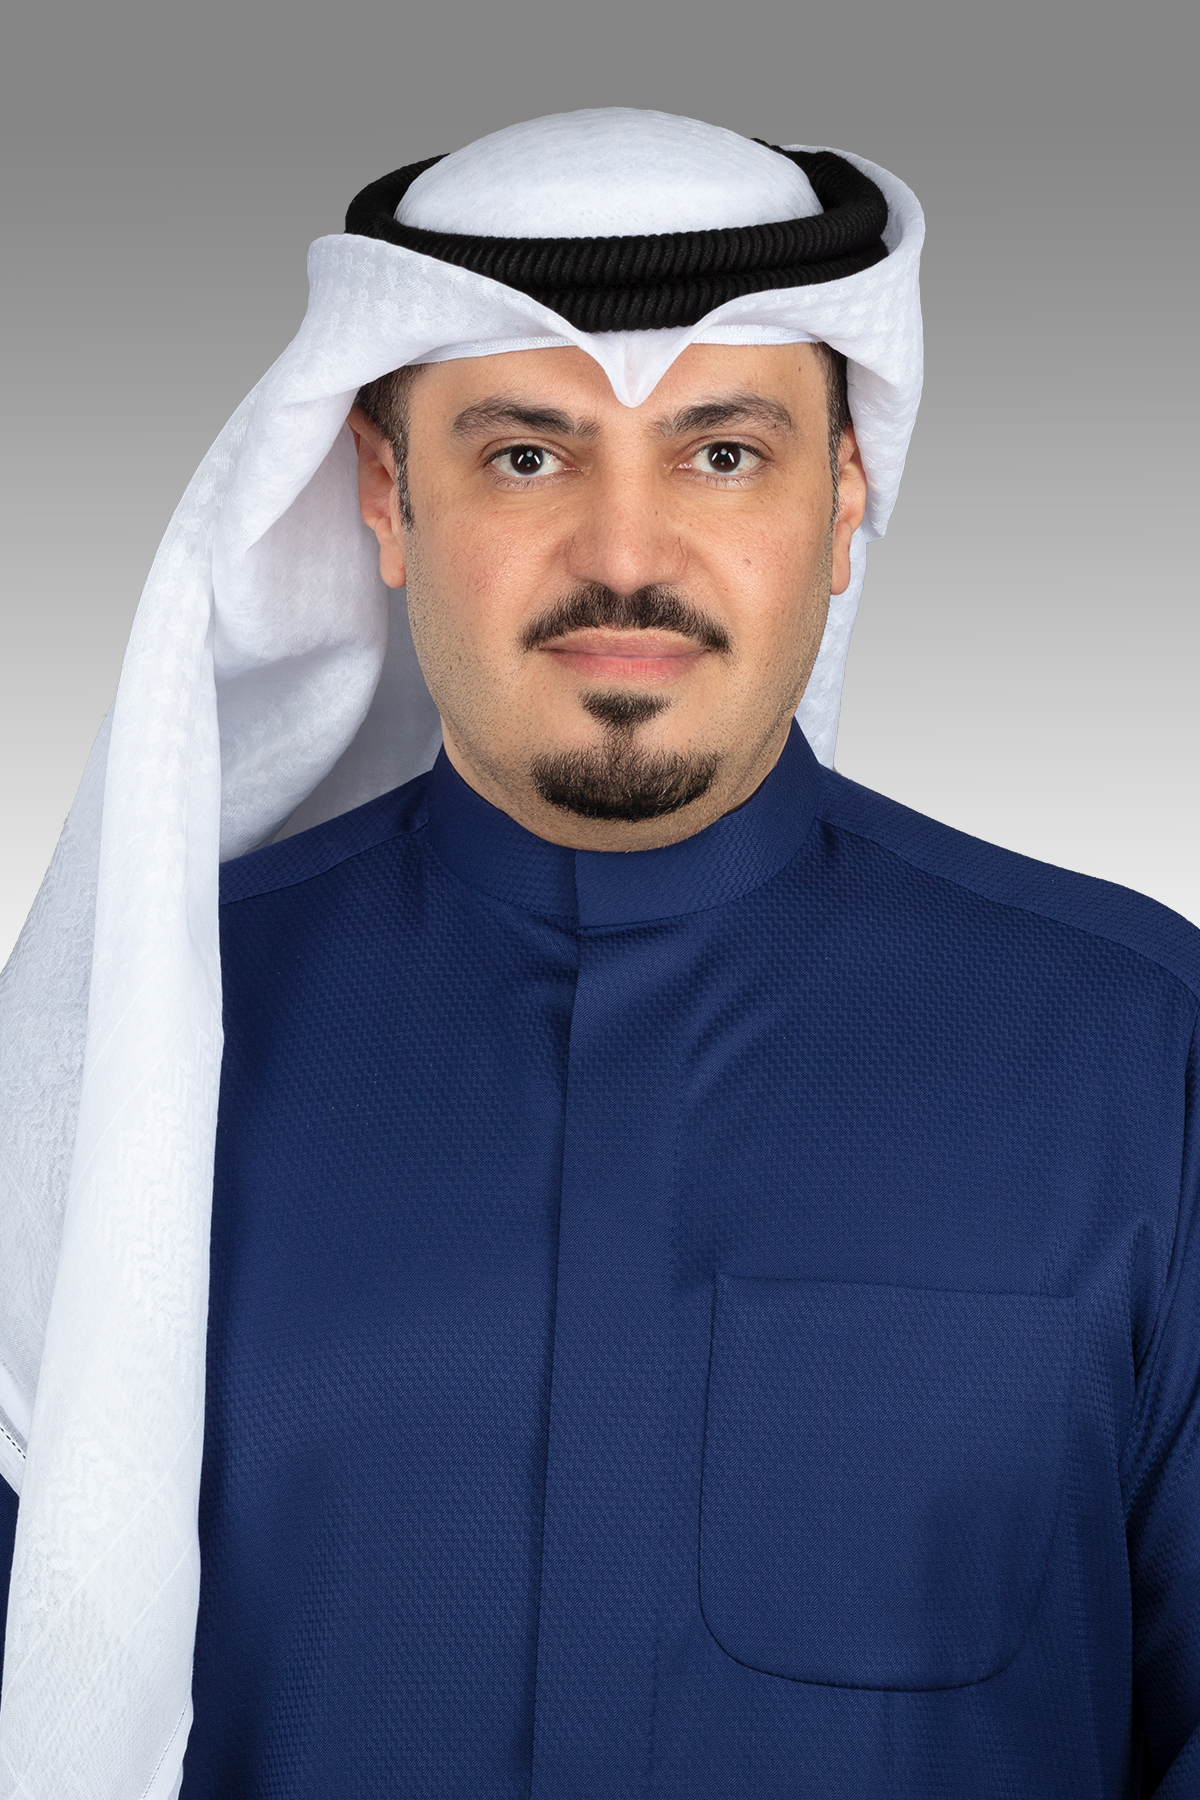 هشام الصالح يقترح حظر فتح مقار السفارات والقنصليات في المناطق السكنية